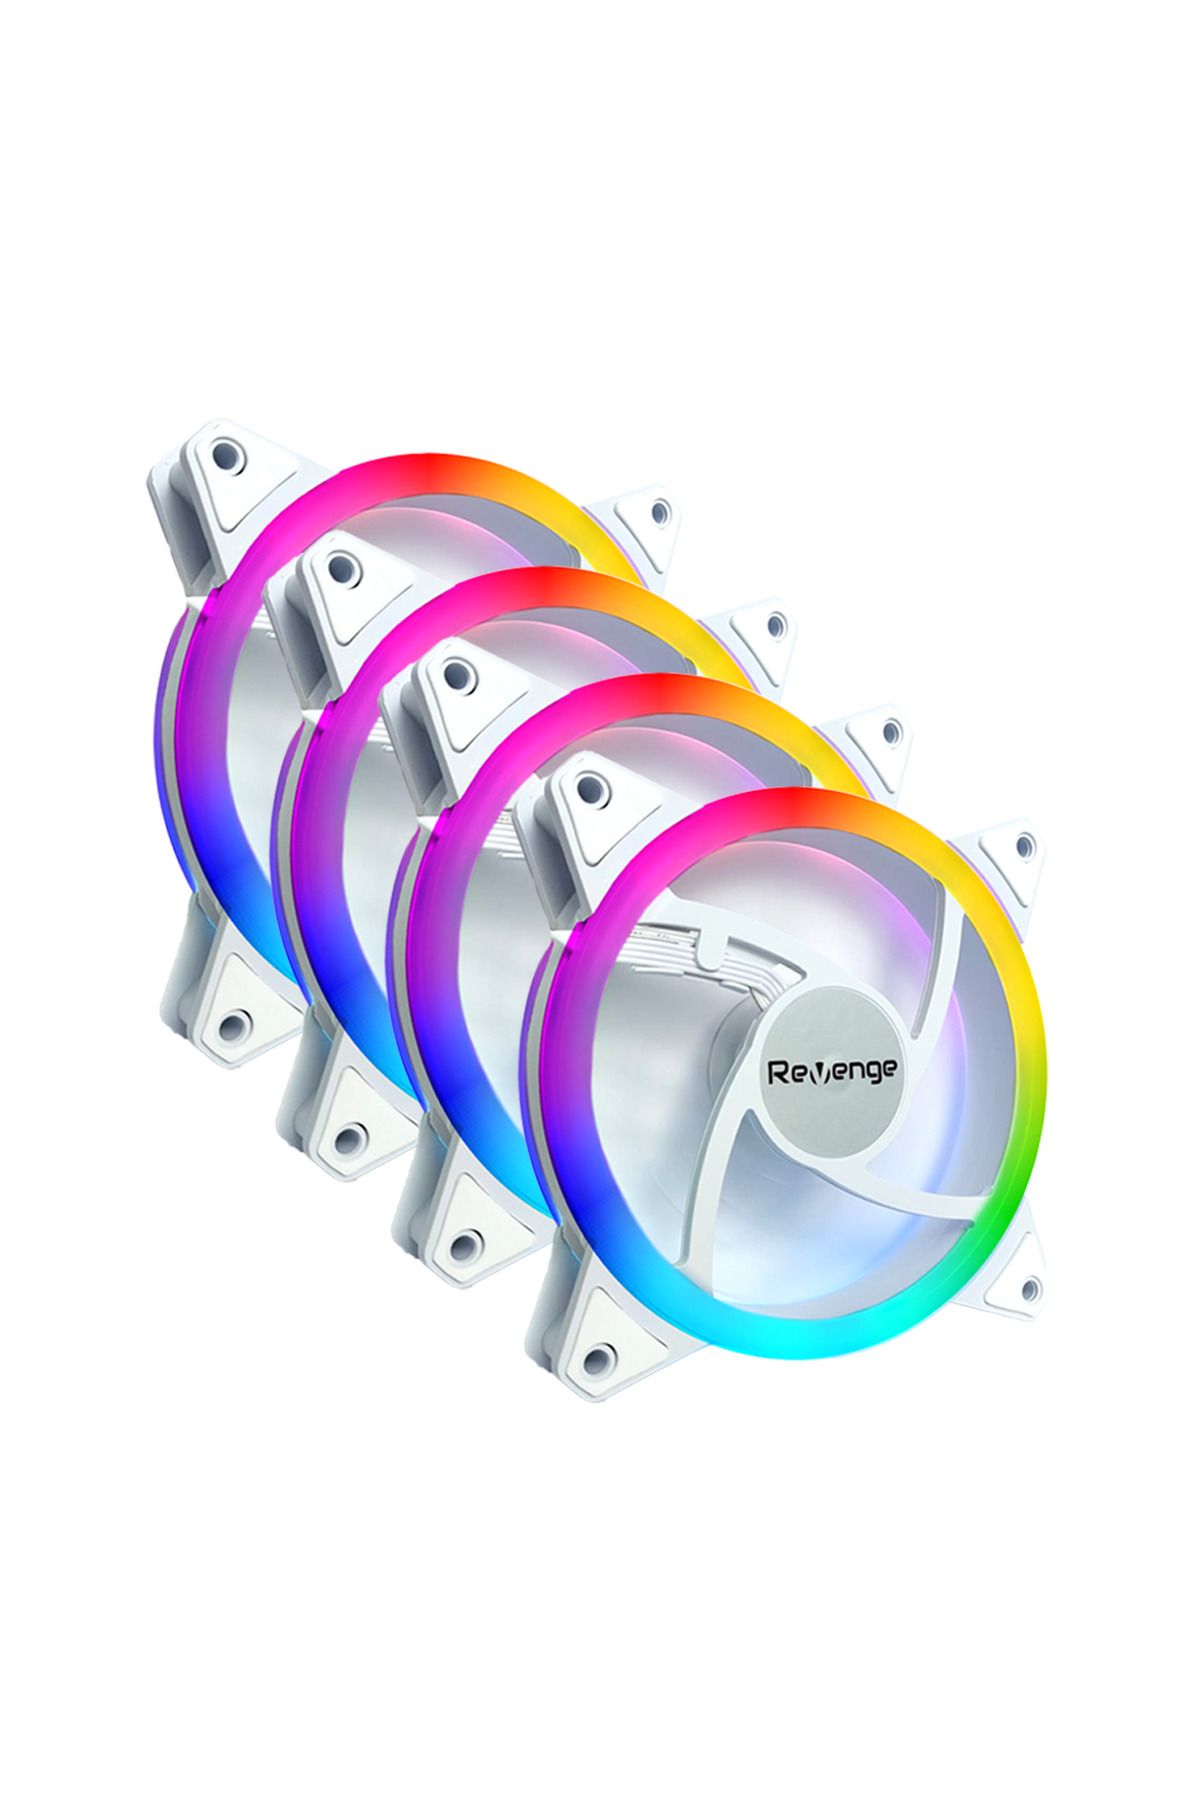 Revenge 12cm 4 Adet Beyaz RGB Renk Değiştiren 120mm Fan Seti 4'lü Set Molex LED Kasa Fanı